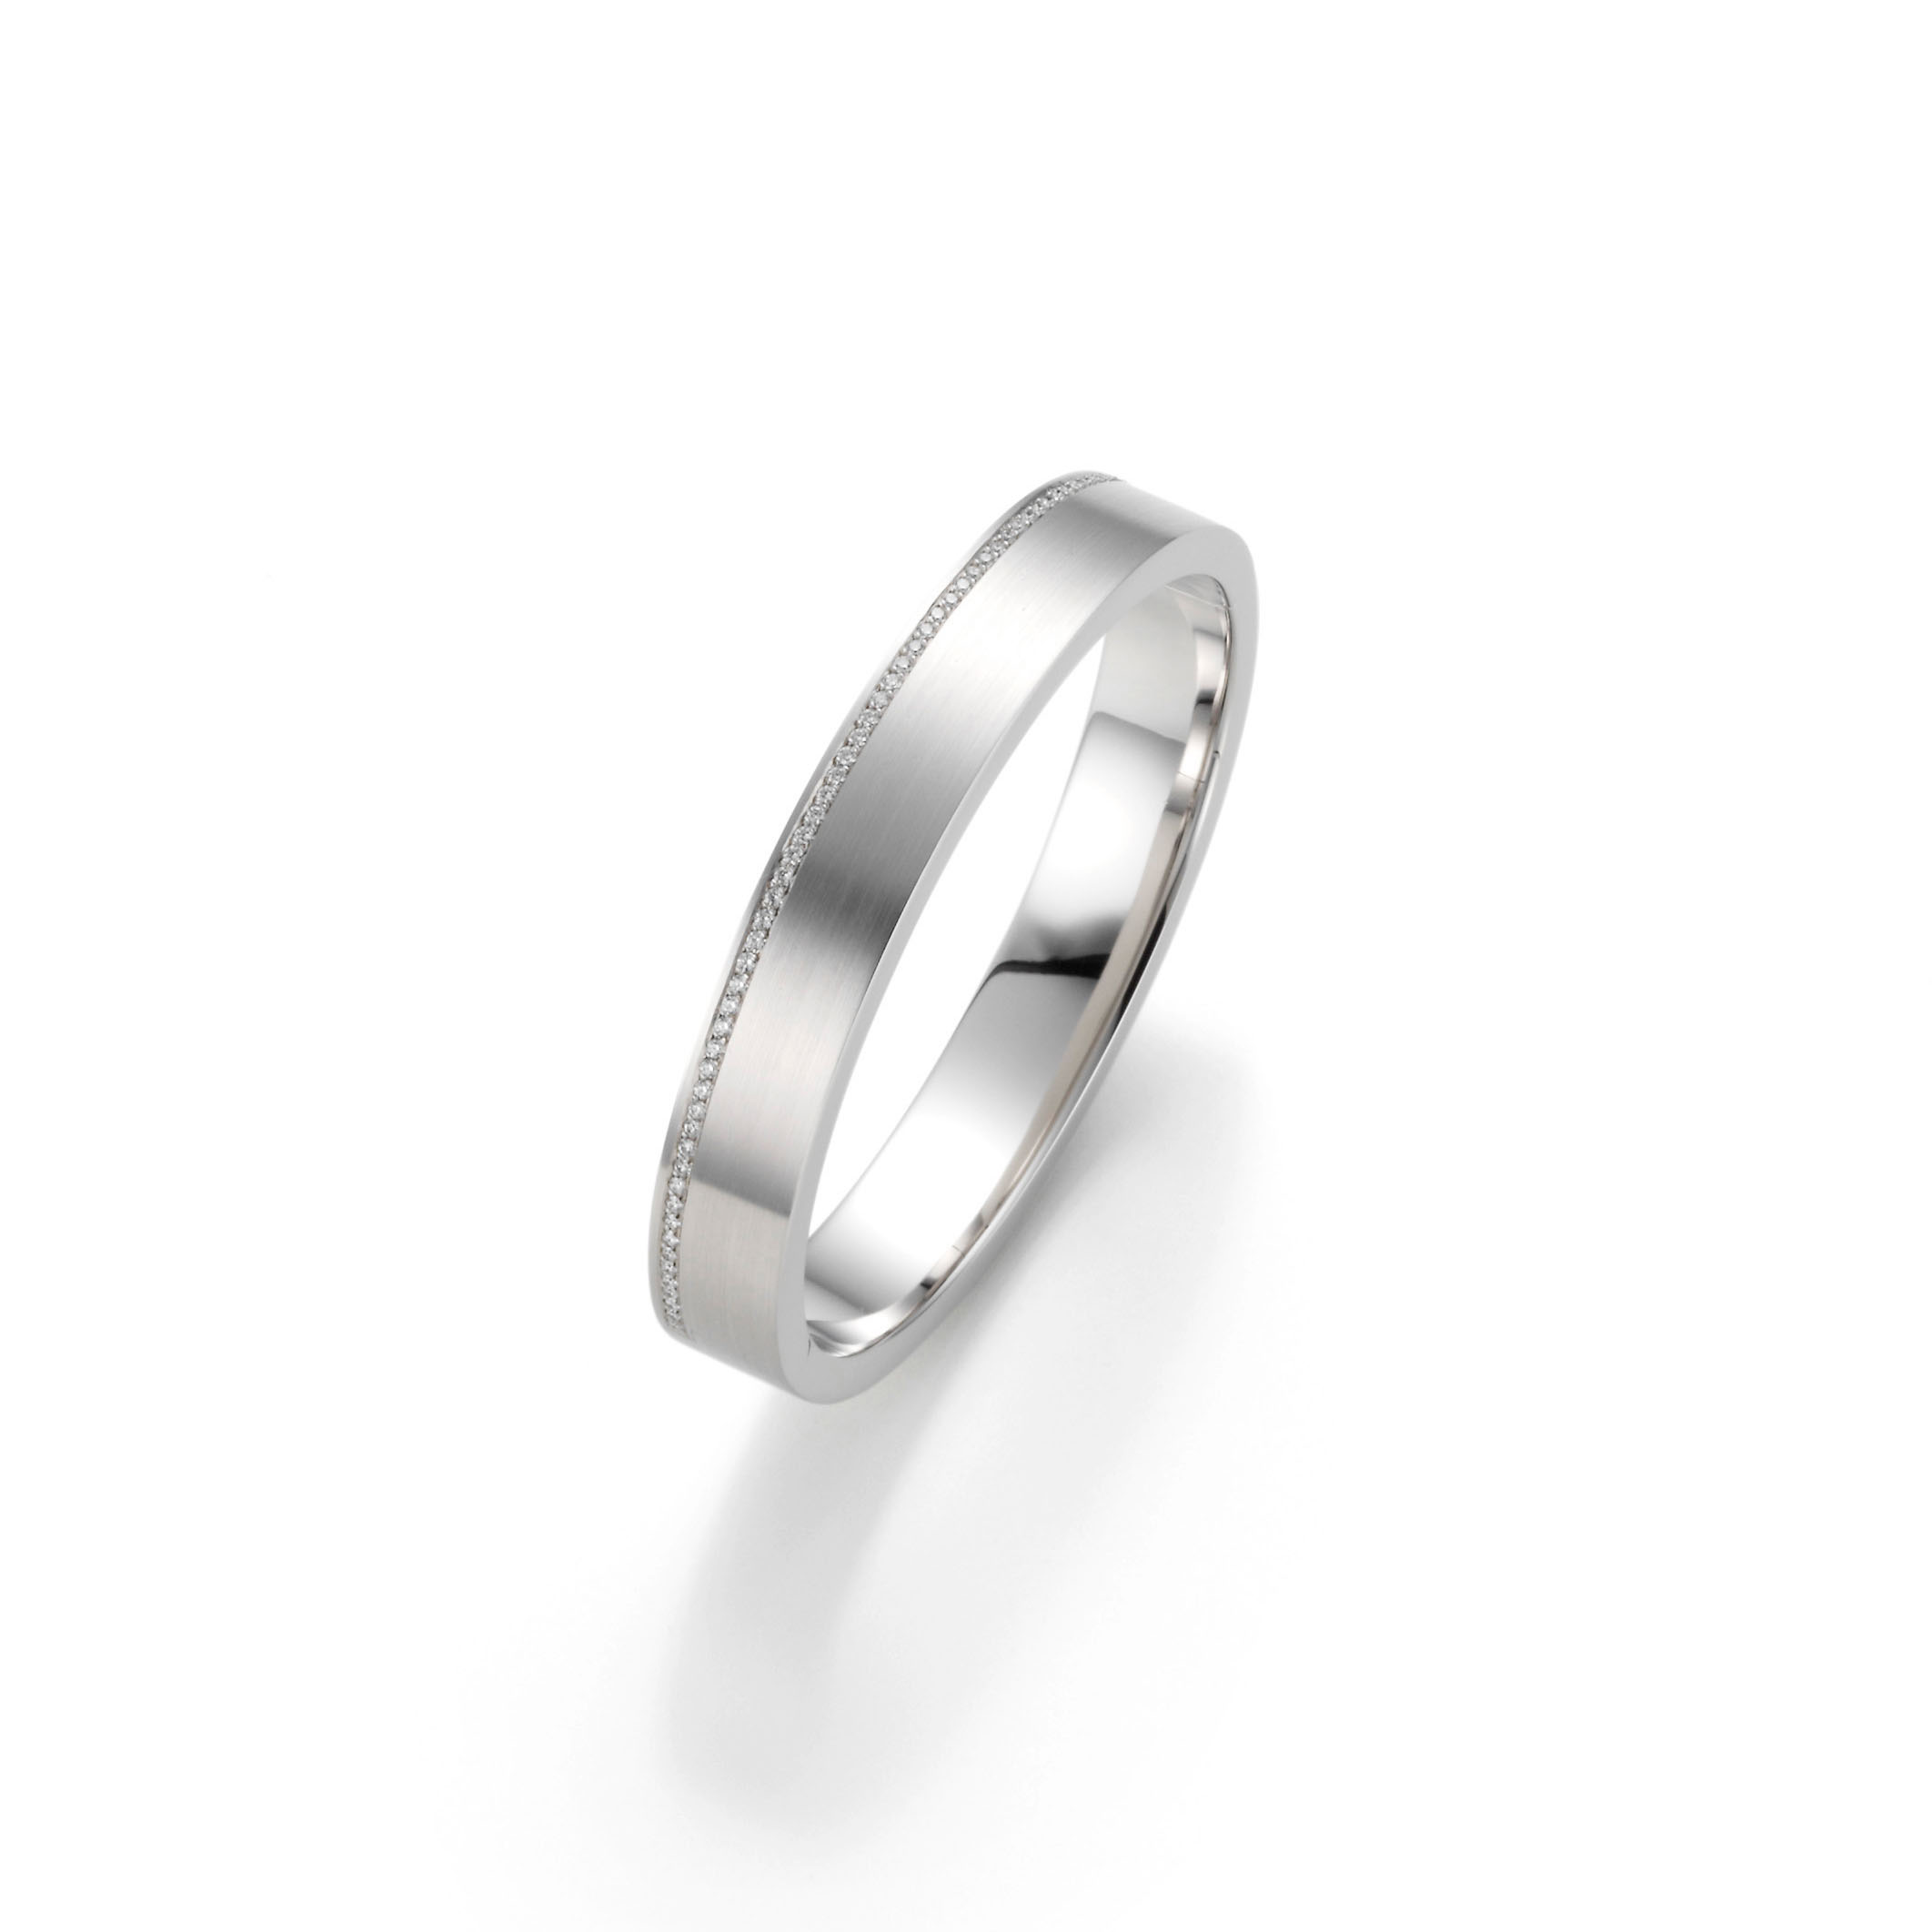 Velkoobchod OEM/ODM Jewelry s925 rhodiové prsteny Personalizovaný zakázkový výrobce šperků